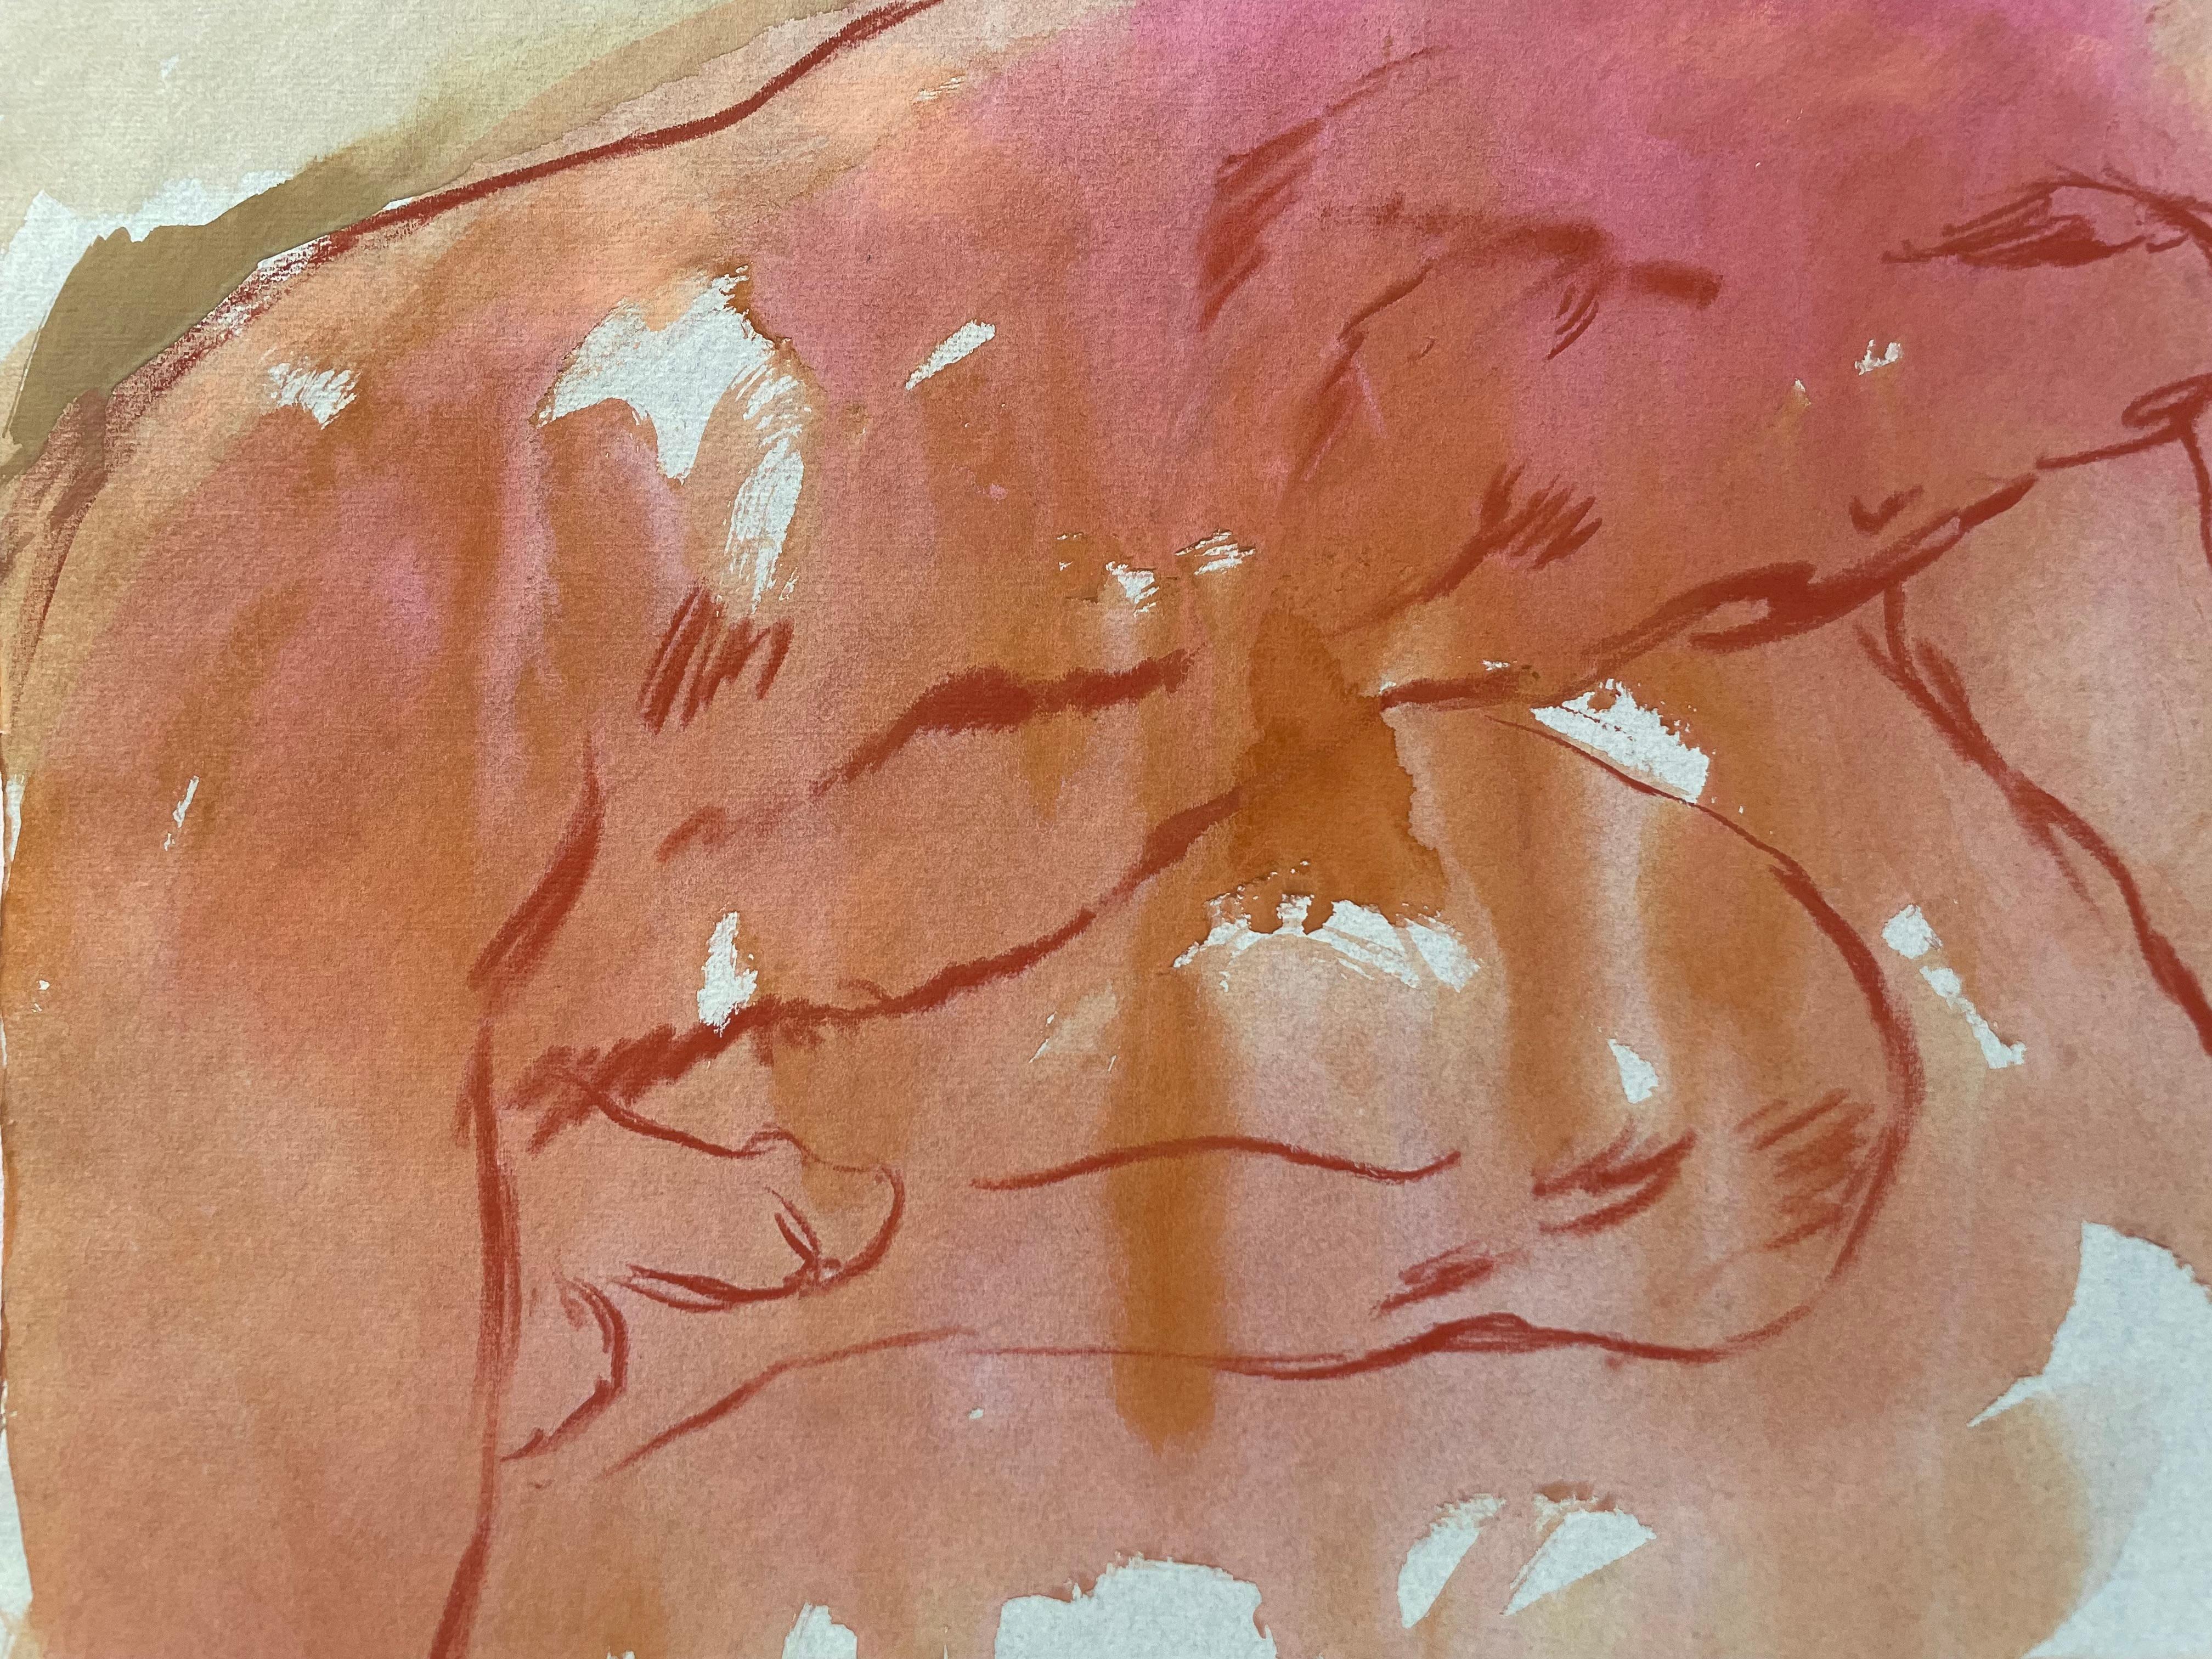 Originale Gouache- und Ölpastell-Figurenzeichnung des berühmten kalifornischen impressionistischen Landschaftsmalers des 20. Jahrhunderts, Ronald Shap. Kauernder nackter Mann mit Schnurrbart und blondem Haar mit Pfirsich- und Rosatönen auf